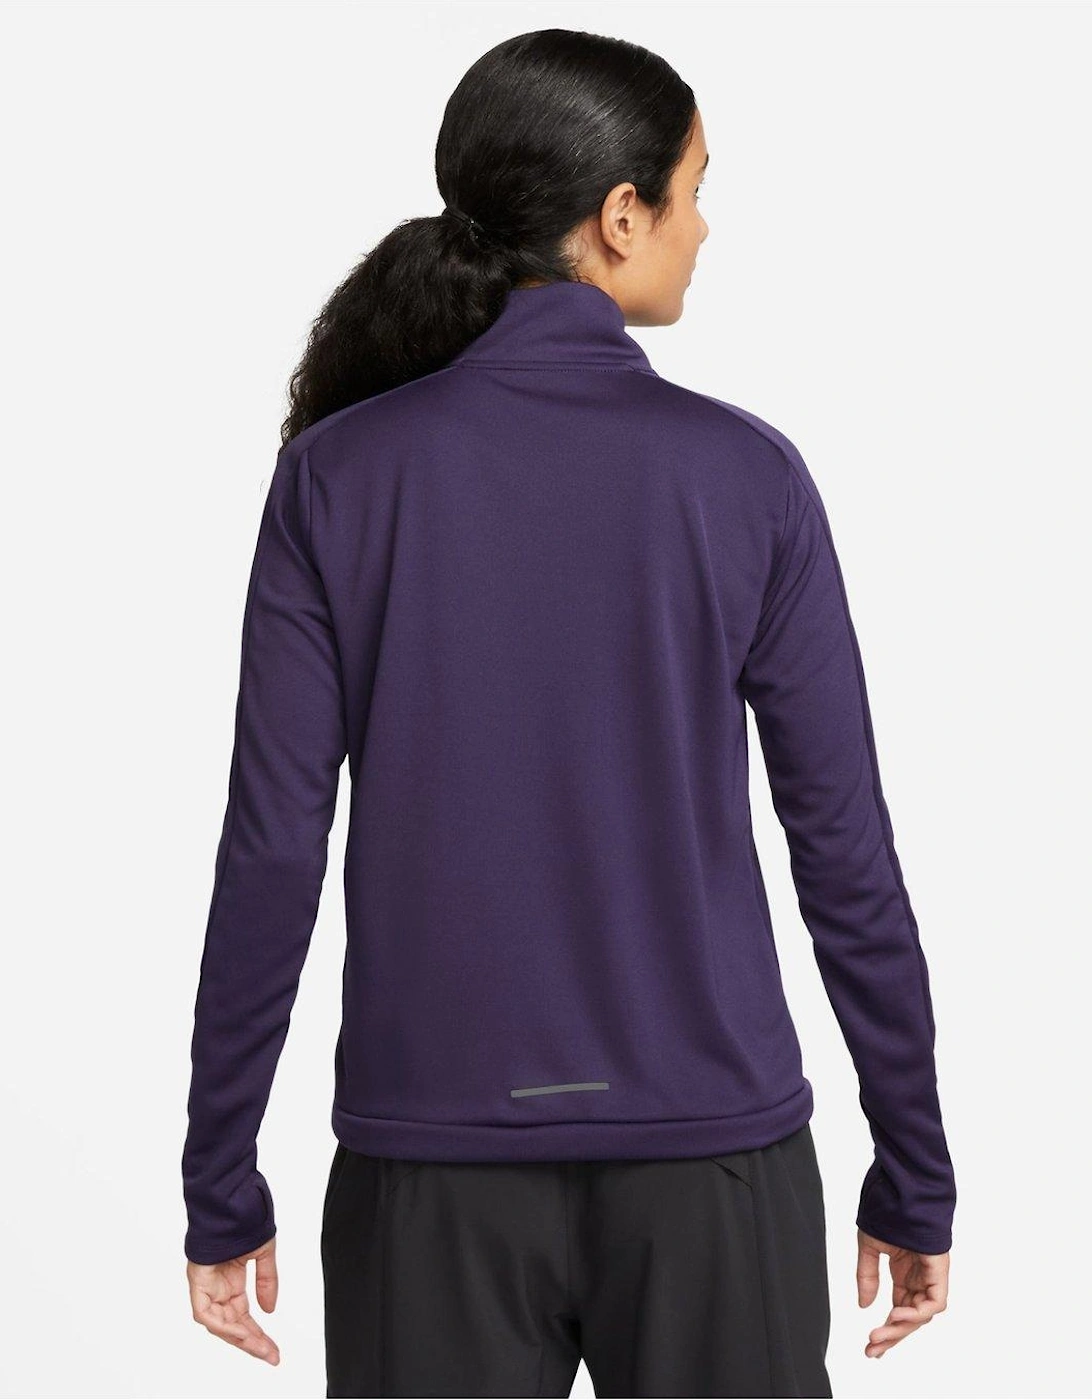 Dri-FIT Pacer Women's 1/4-Zip Pullover Top - Purple